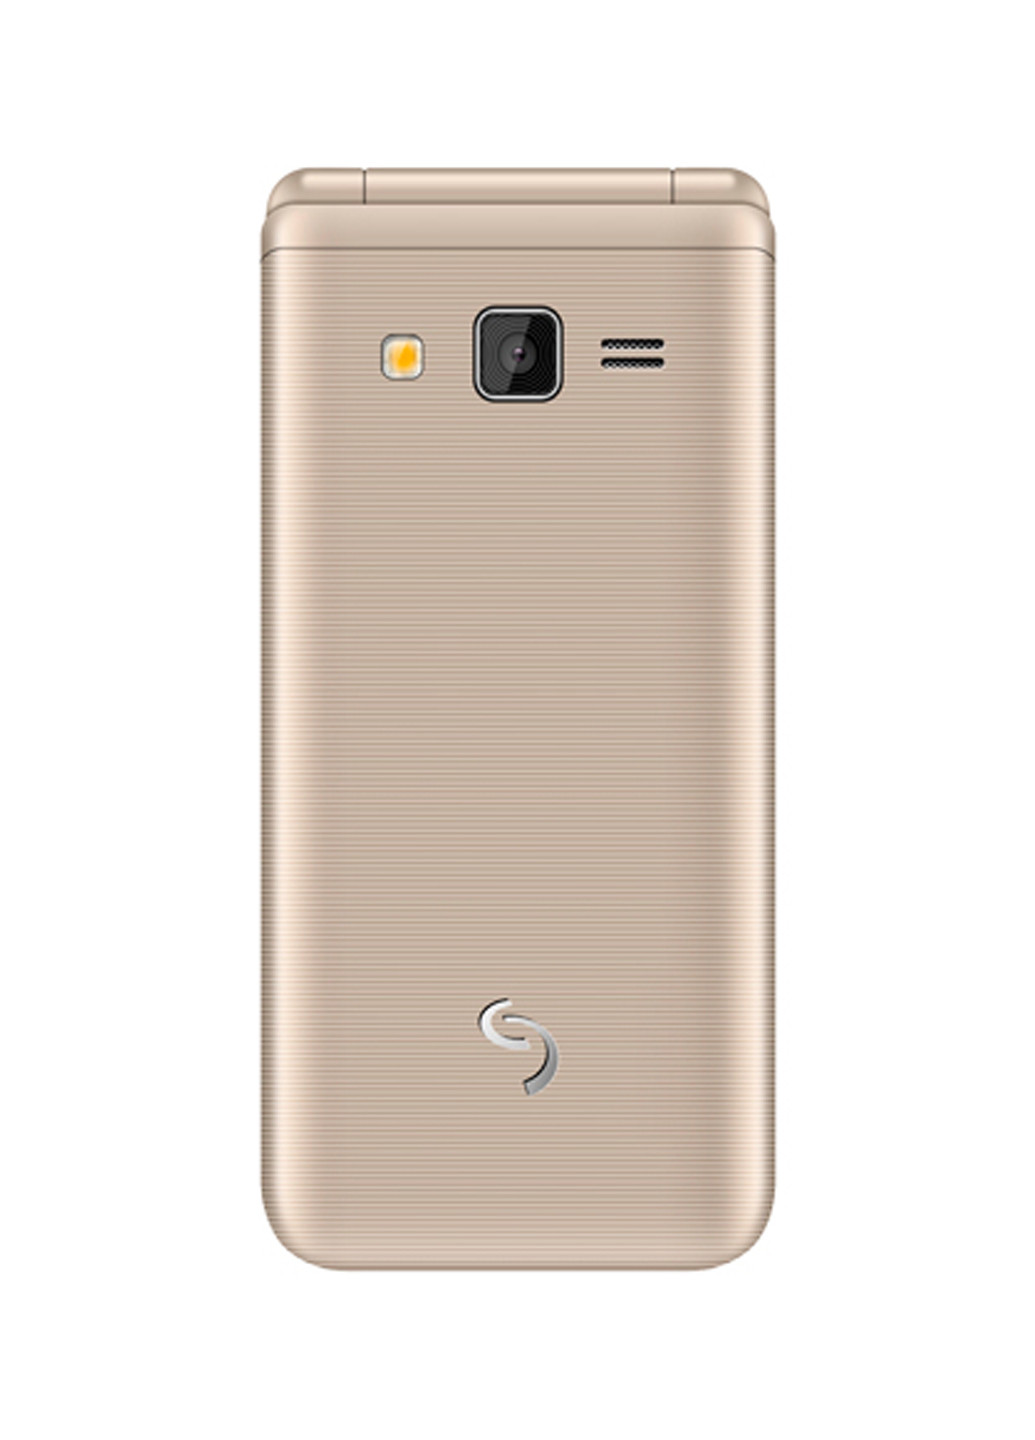 Мобільний телефон X-style 28 Flip gold-mokka (4827798524657) Sigma mobile x-style 28 flip gold-mokka (4827798524657) (130940047)